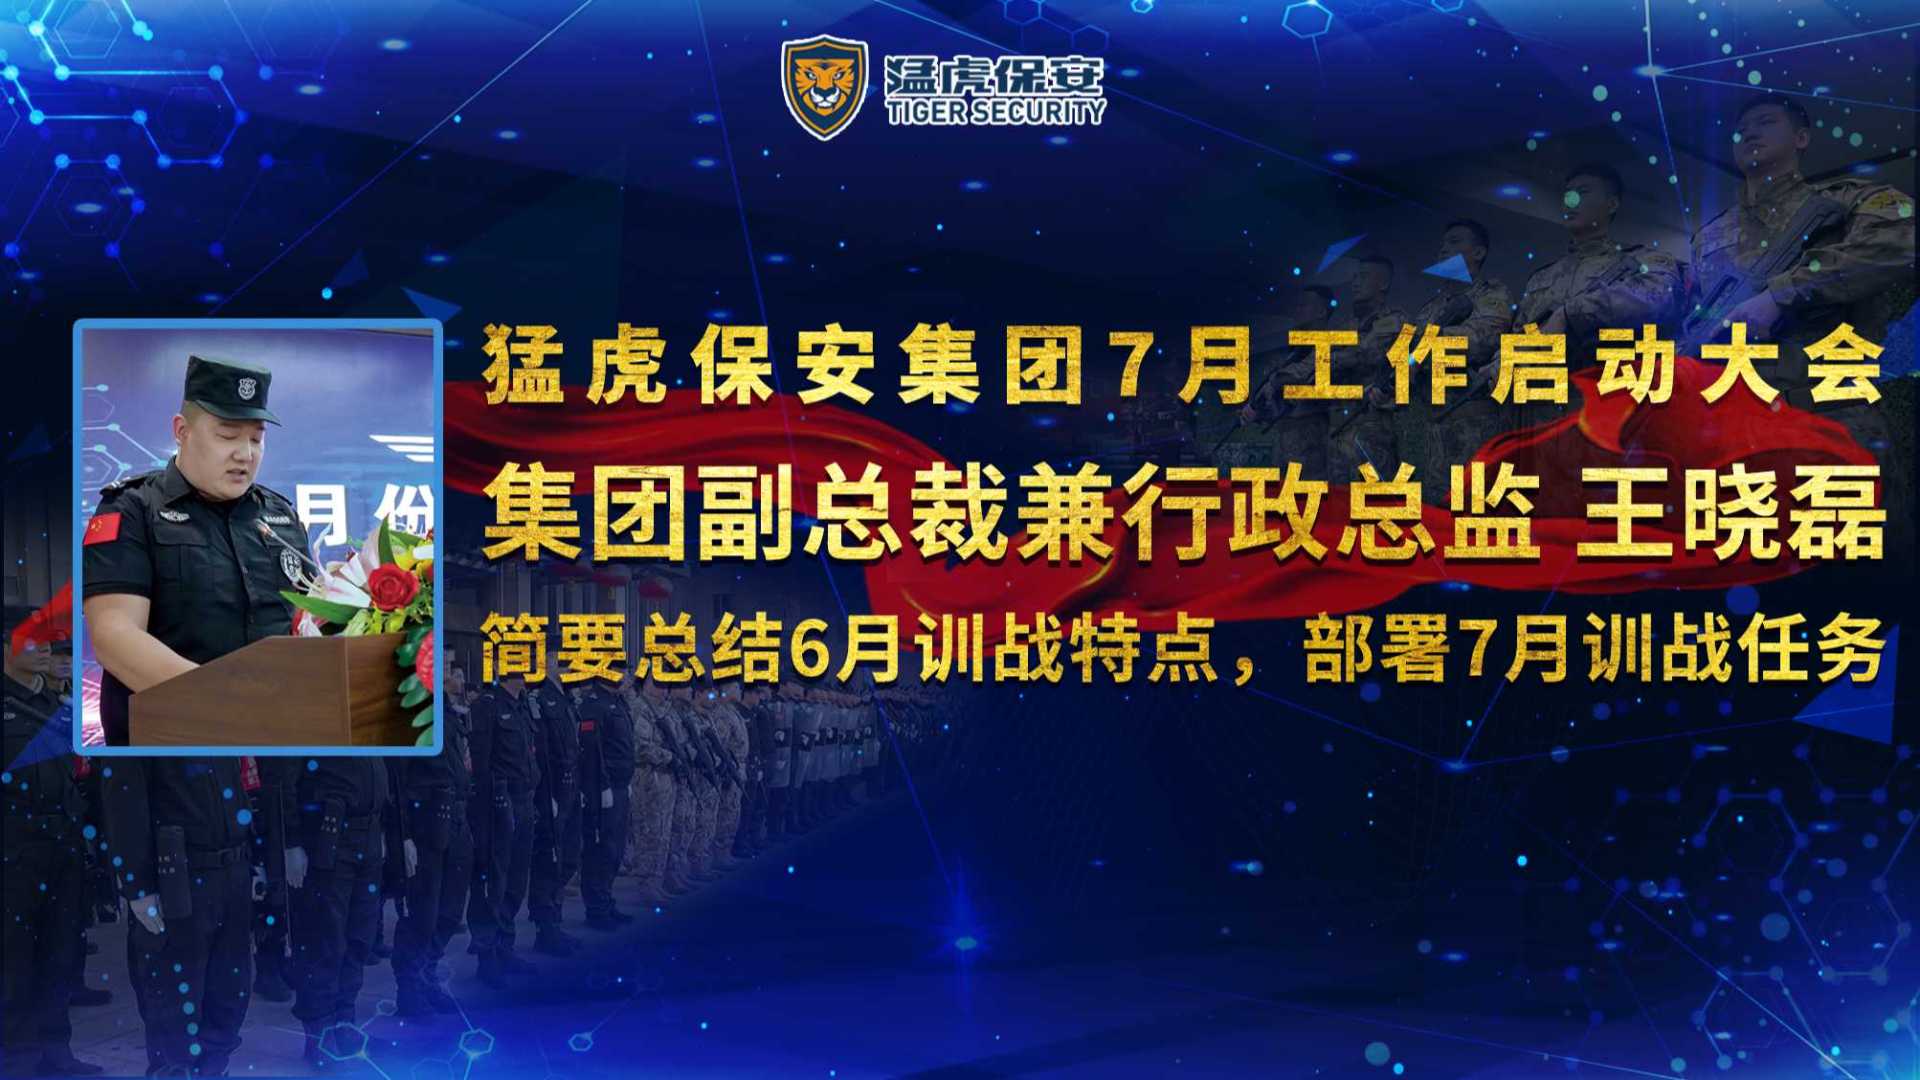 集团副总裁兼行政总监王晓磊简要总结6月训战特点，部署7月训战任务